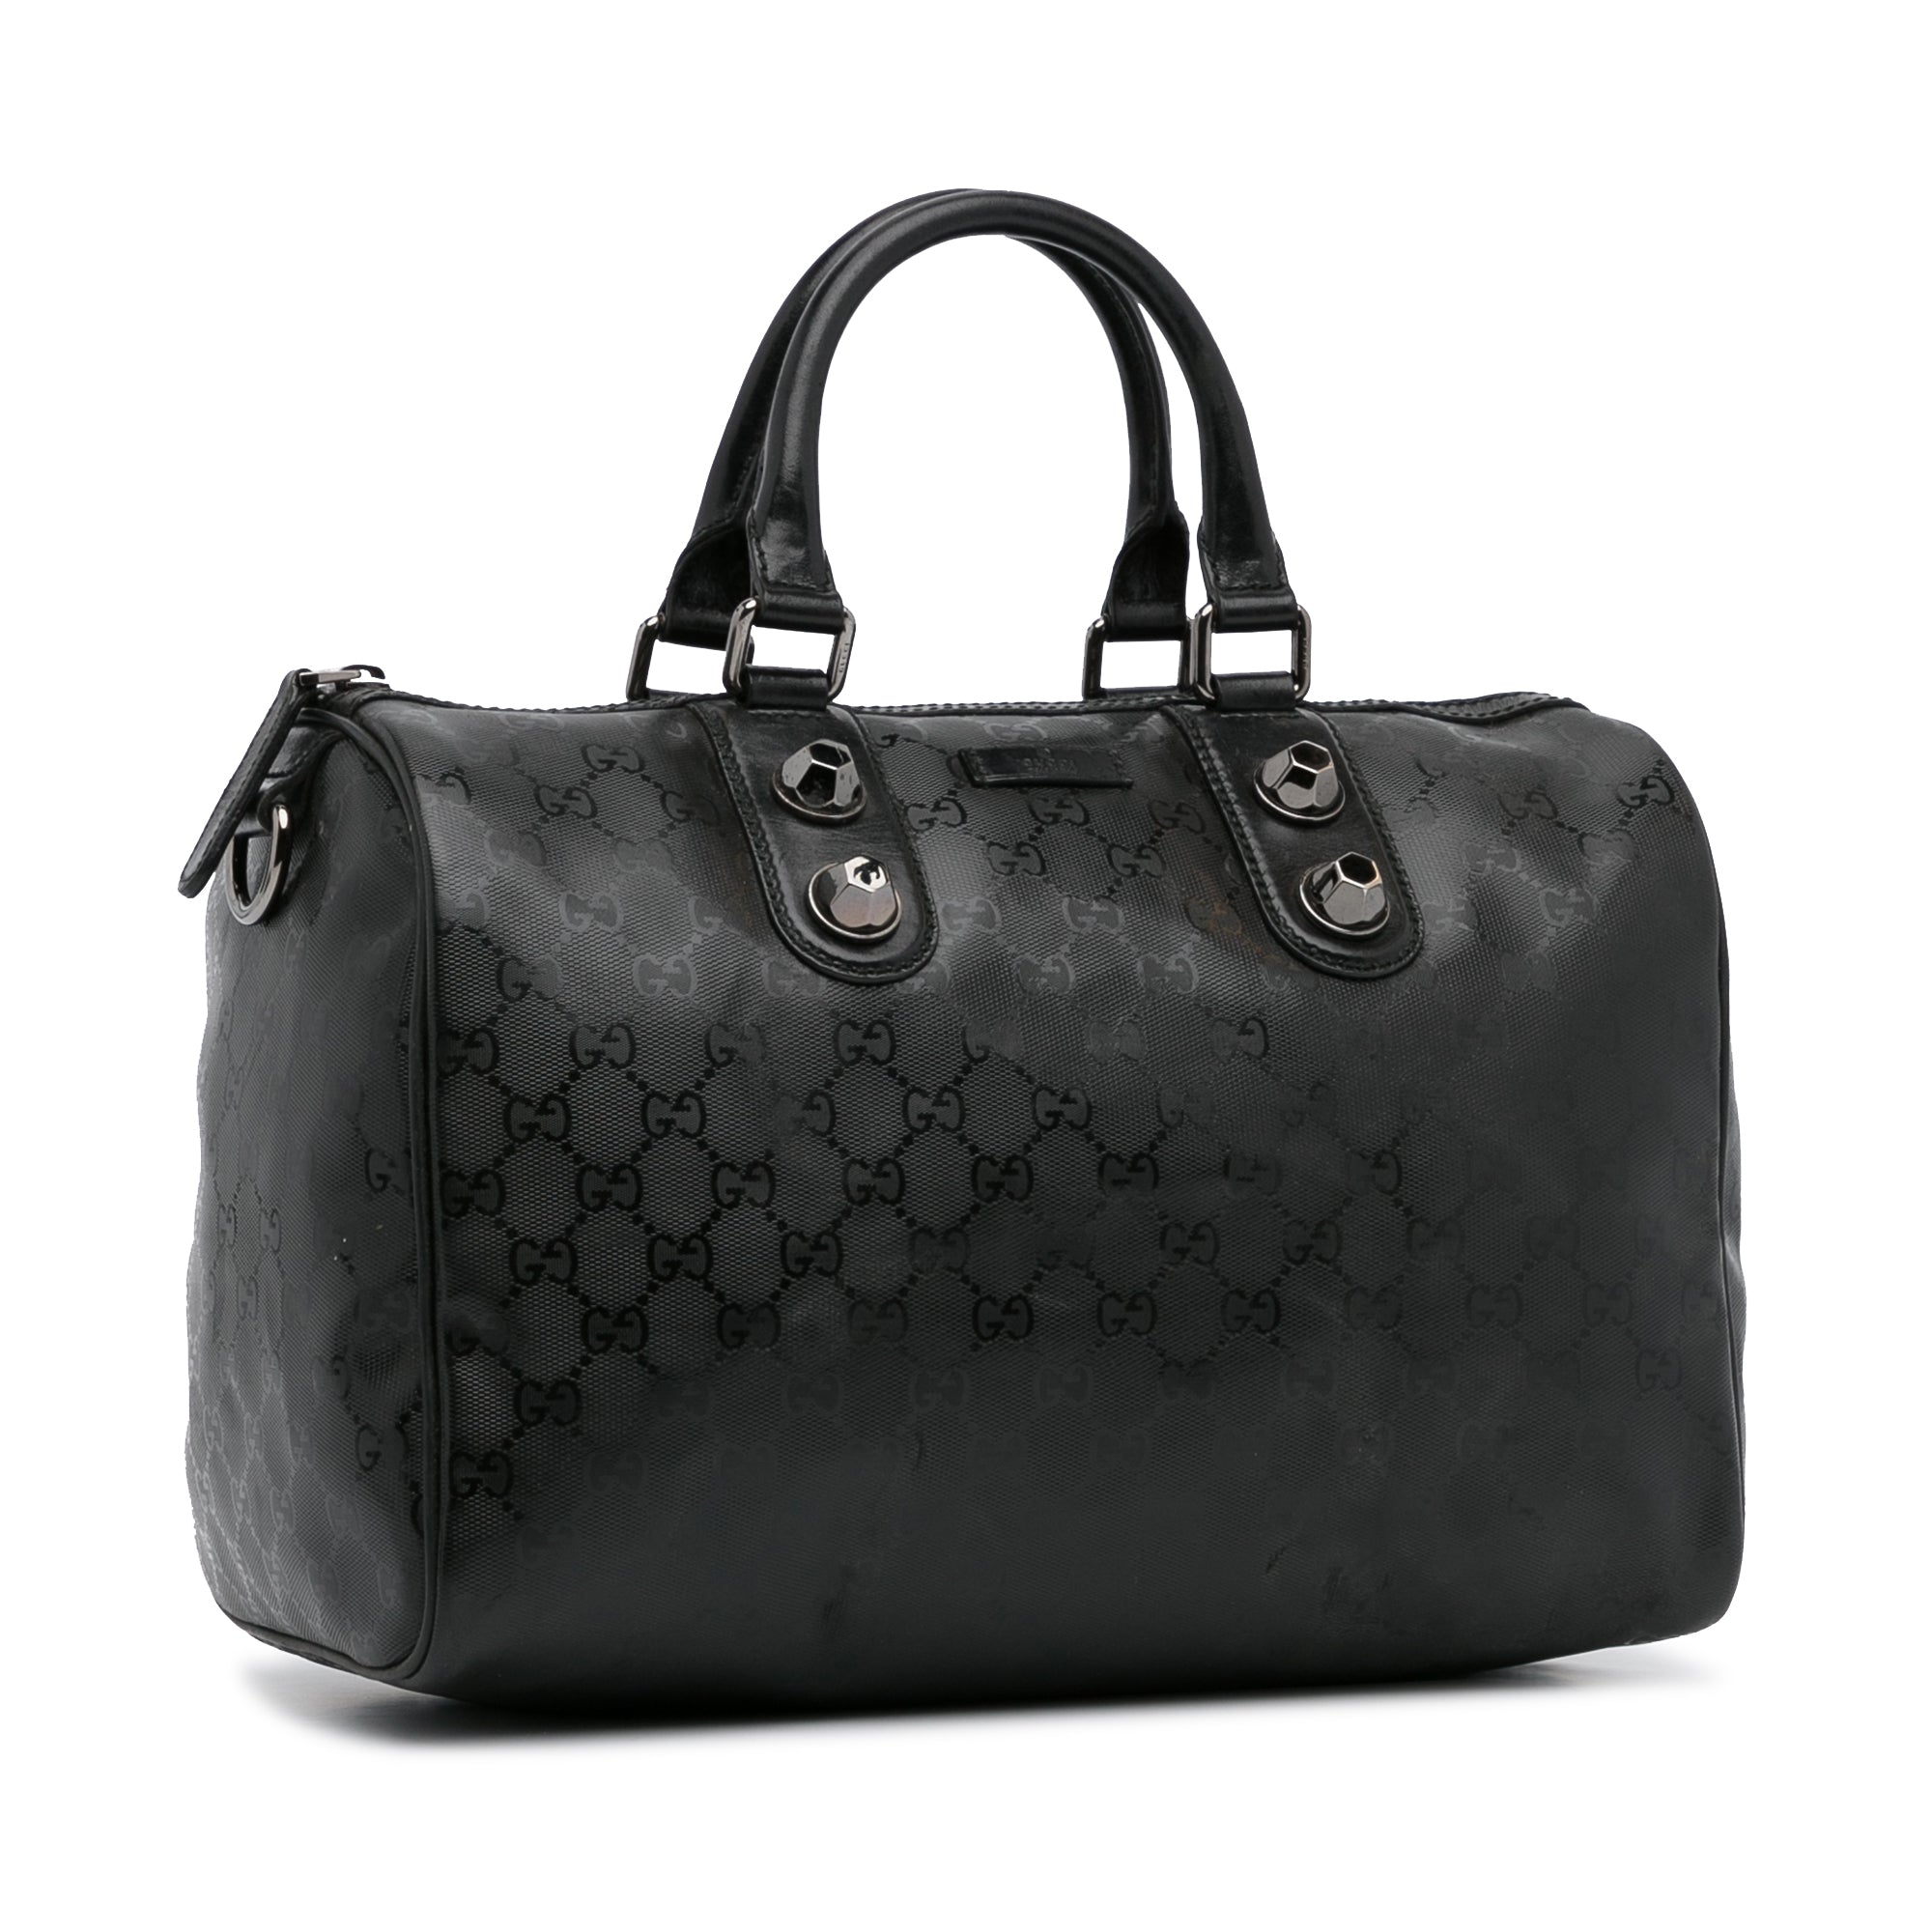 Gucci Joy Medium Boston Bag in Black